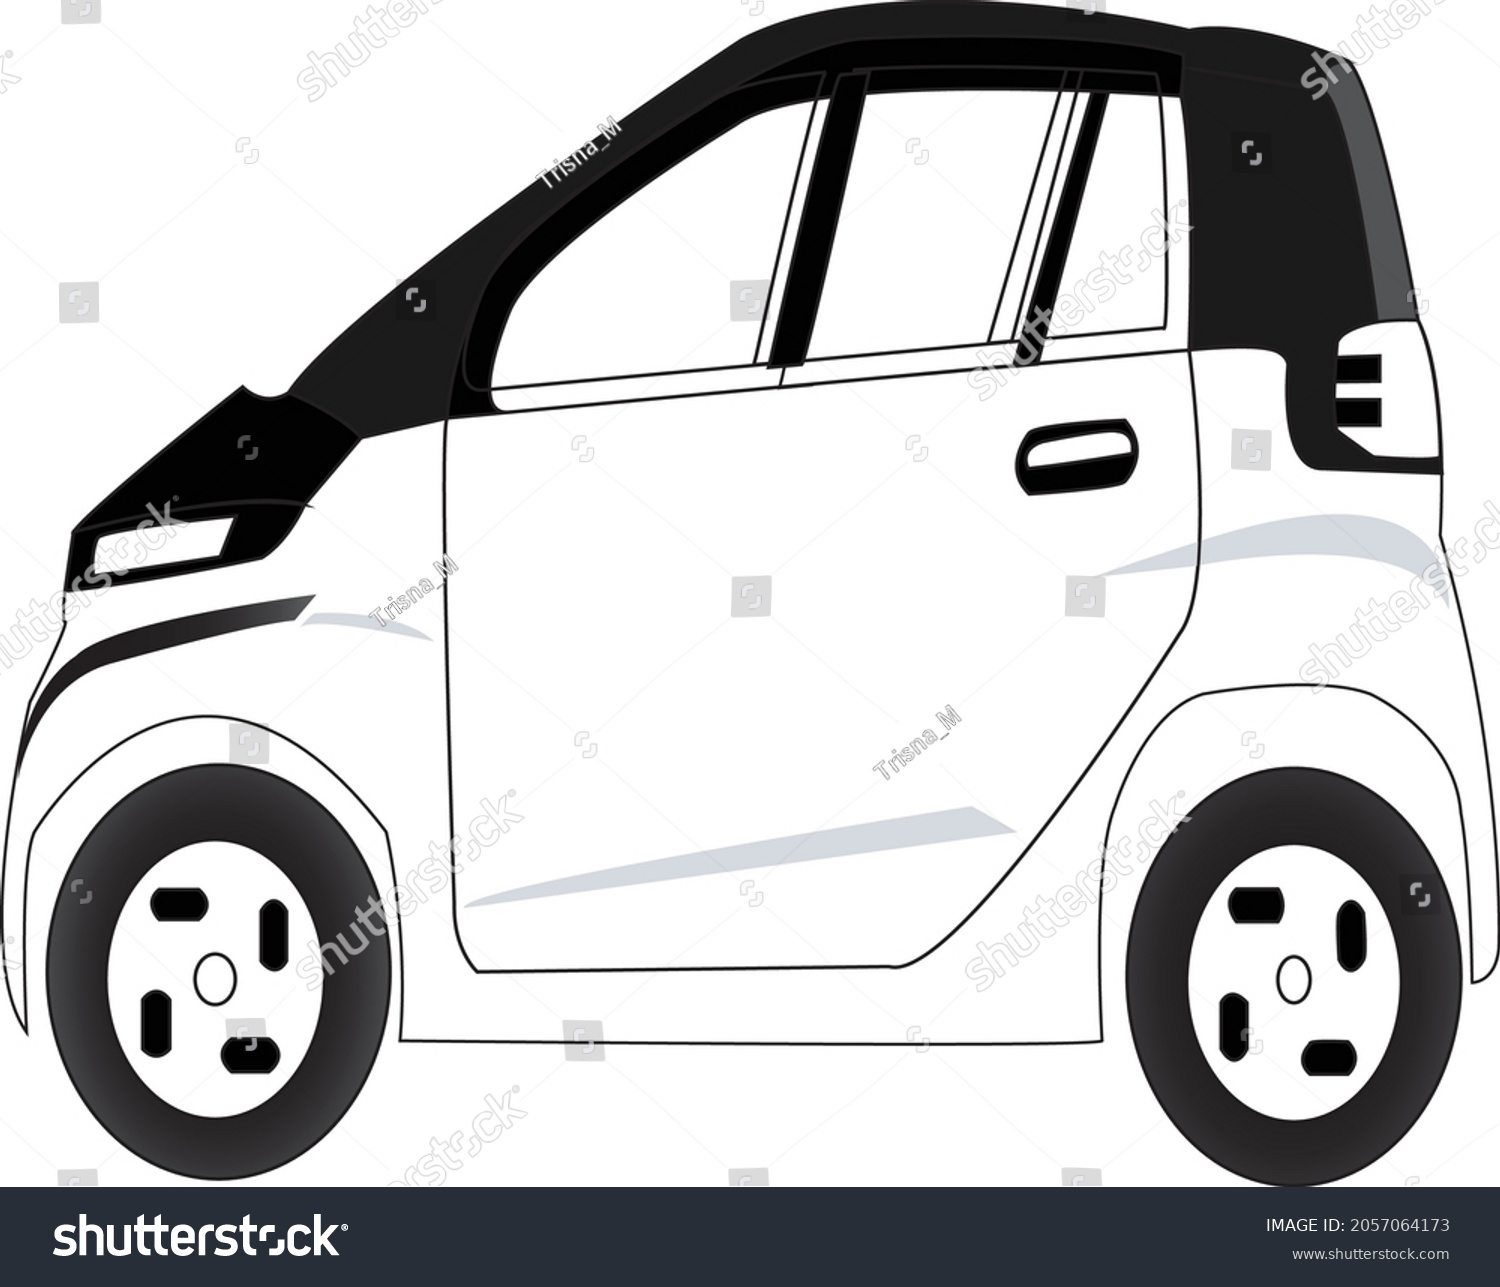 SVG of vektor mobil listrik sebuah kendaraan ramah lingkungan yang dikembangkan untuk menggantikan mobil dengan bahan bakar fosil, dan karena itu mobil ini dinamai mobil pintar svg